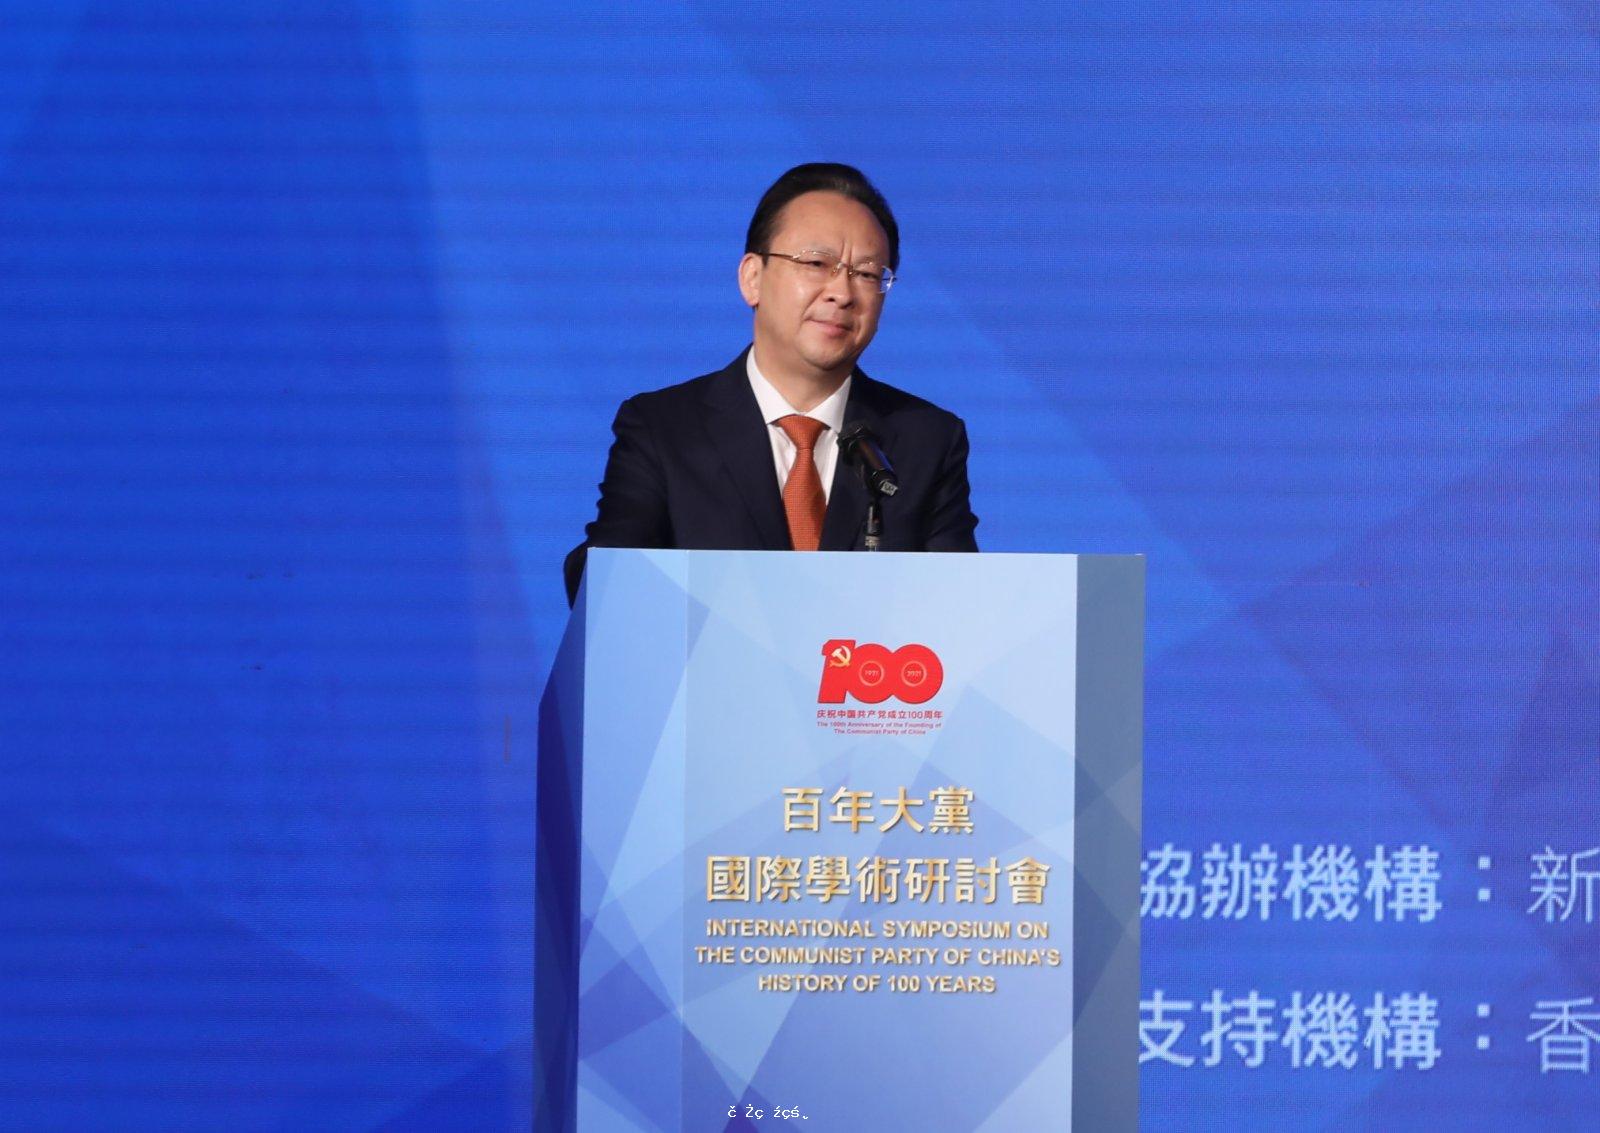 譚鐵牛：中國共產黨是推動人類文明進步重要力量